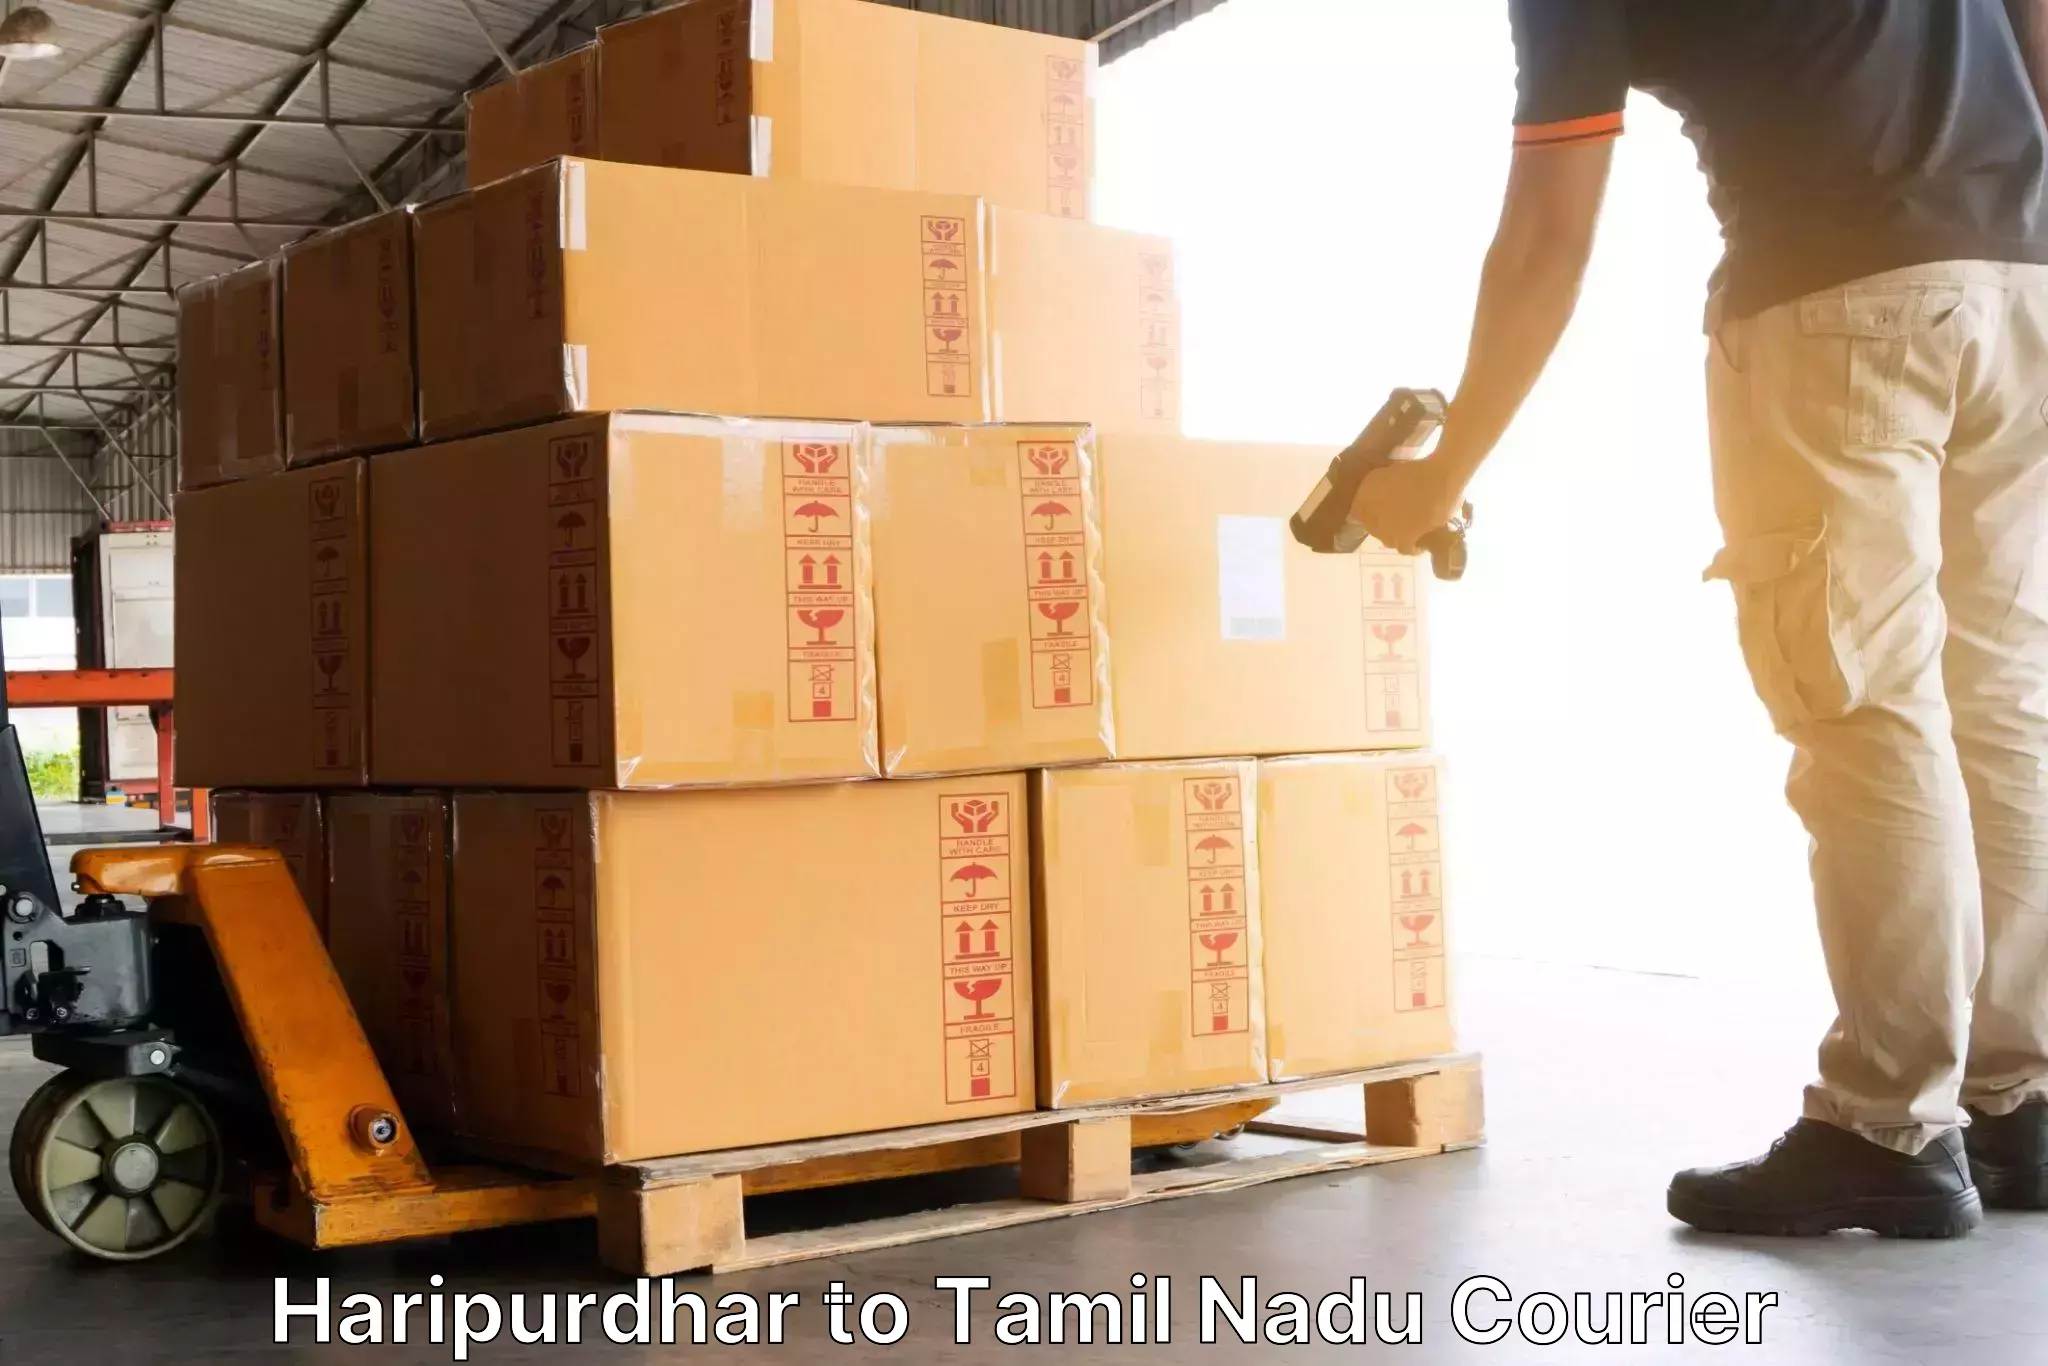 Courier service partnerships Haripurdhar to Karambakkudi